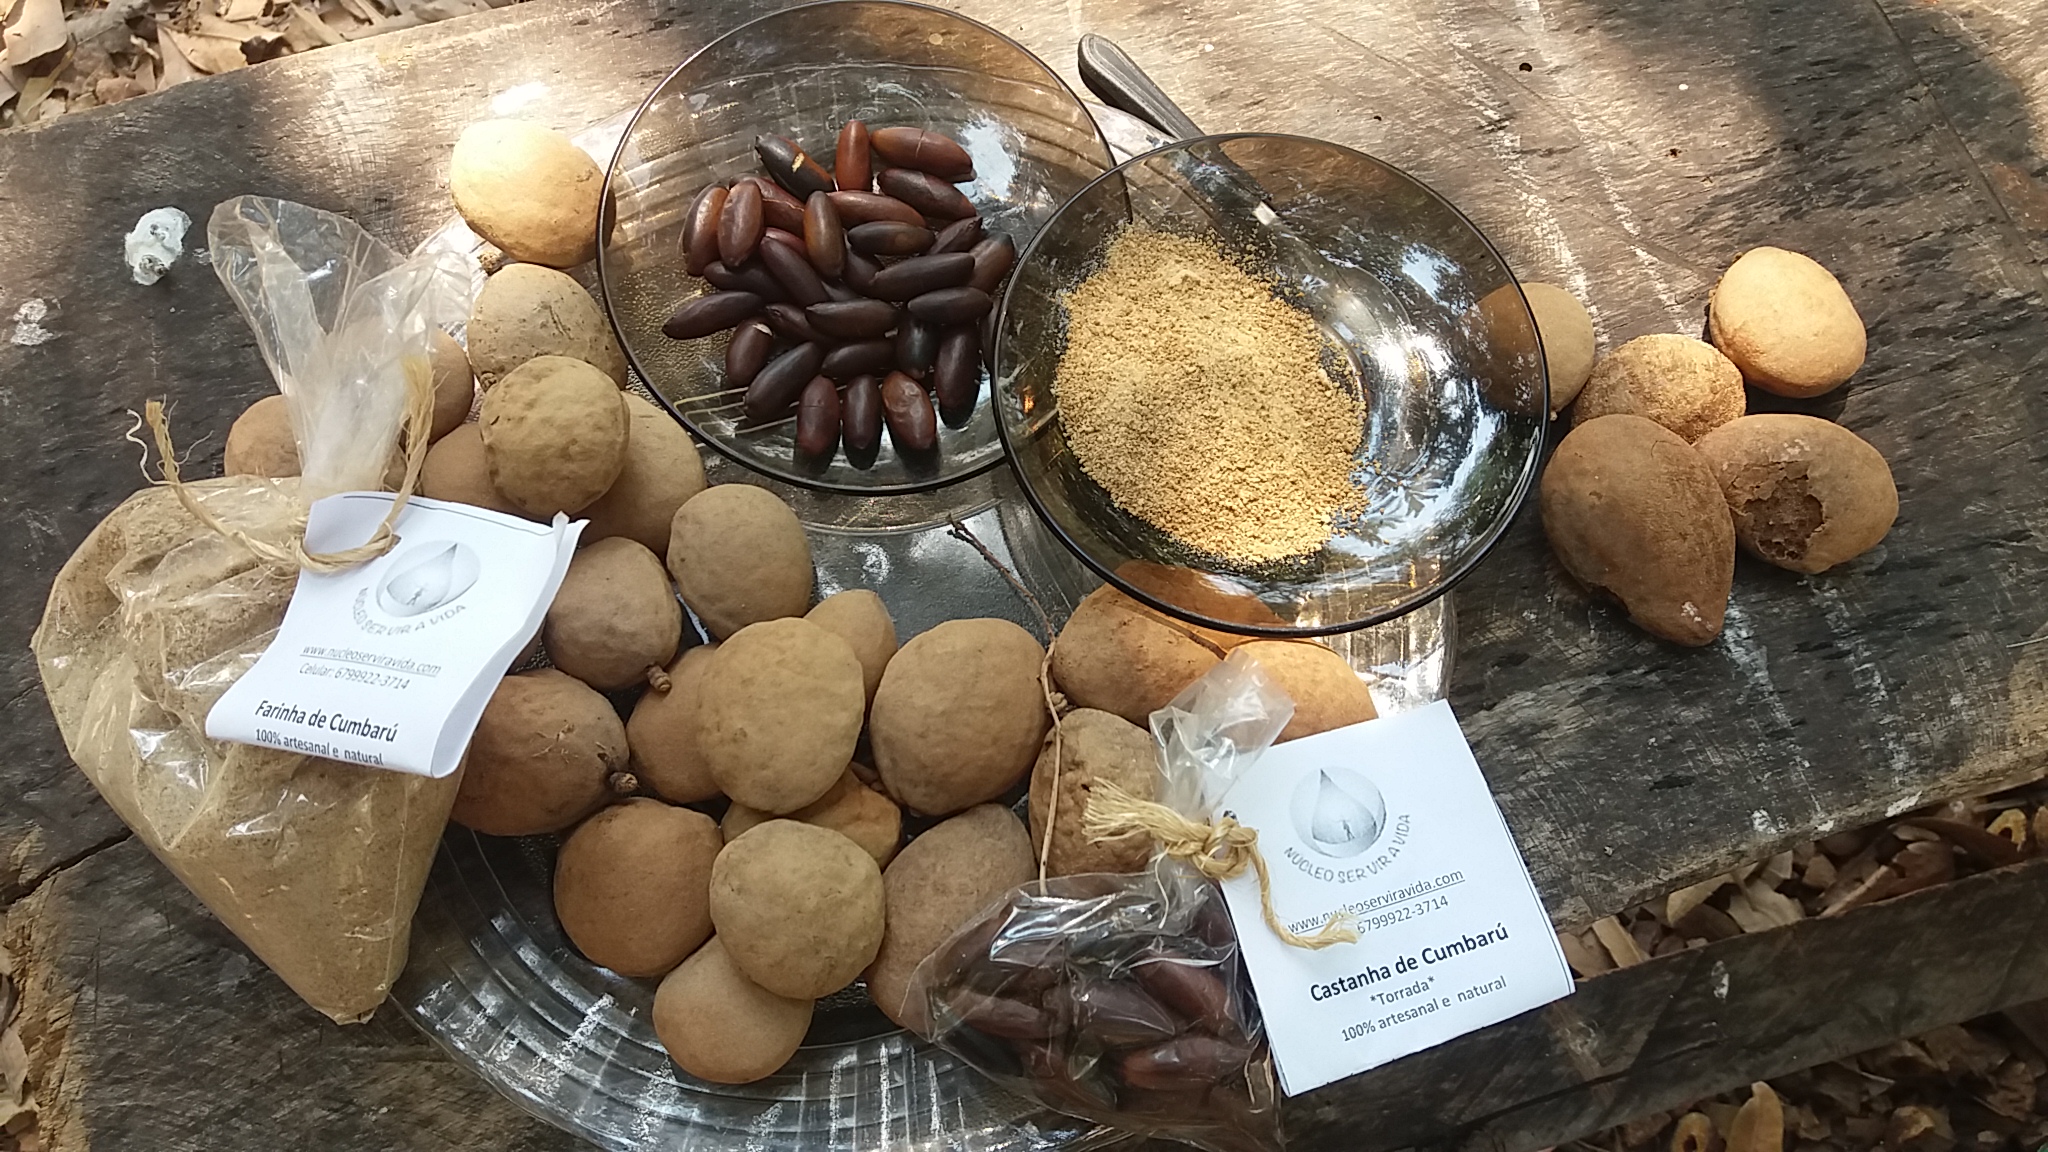 Auf diesem Bild sind verschiedene Baru-Produkte zu sehen: die gerösteten Nüsse, ein Mehl, ein Granulat, und auch die ganze Frucht.